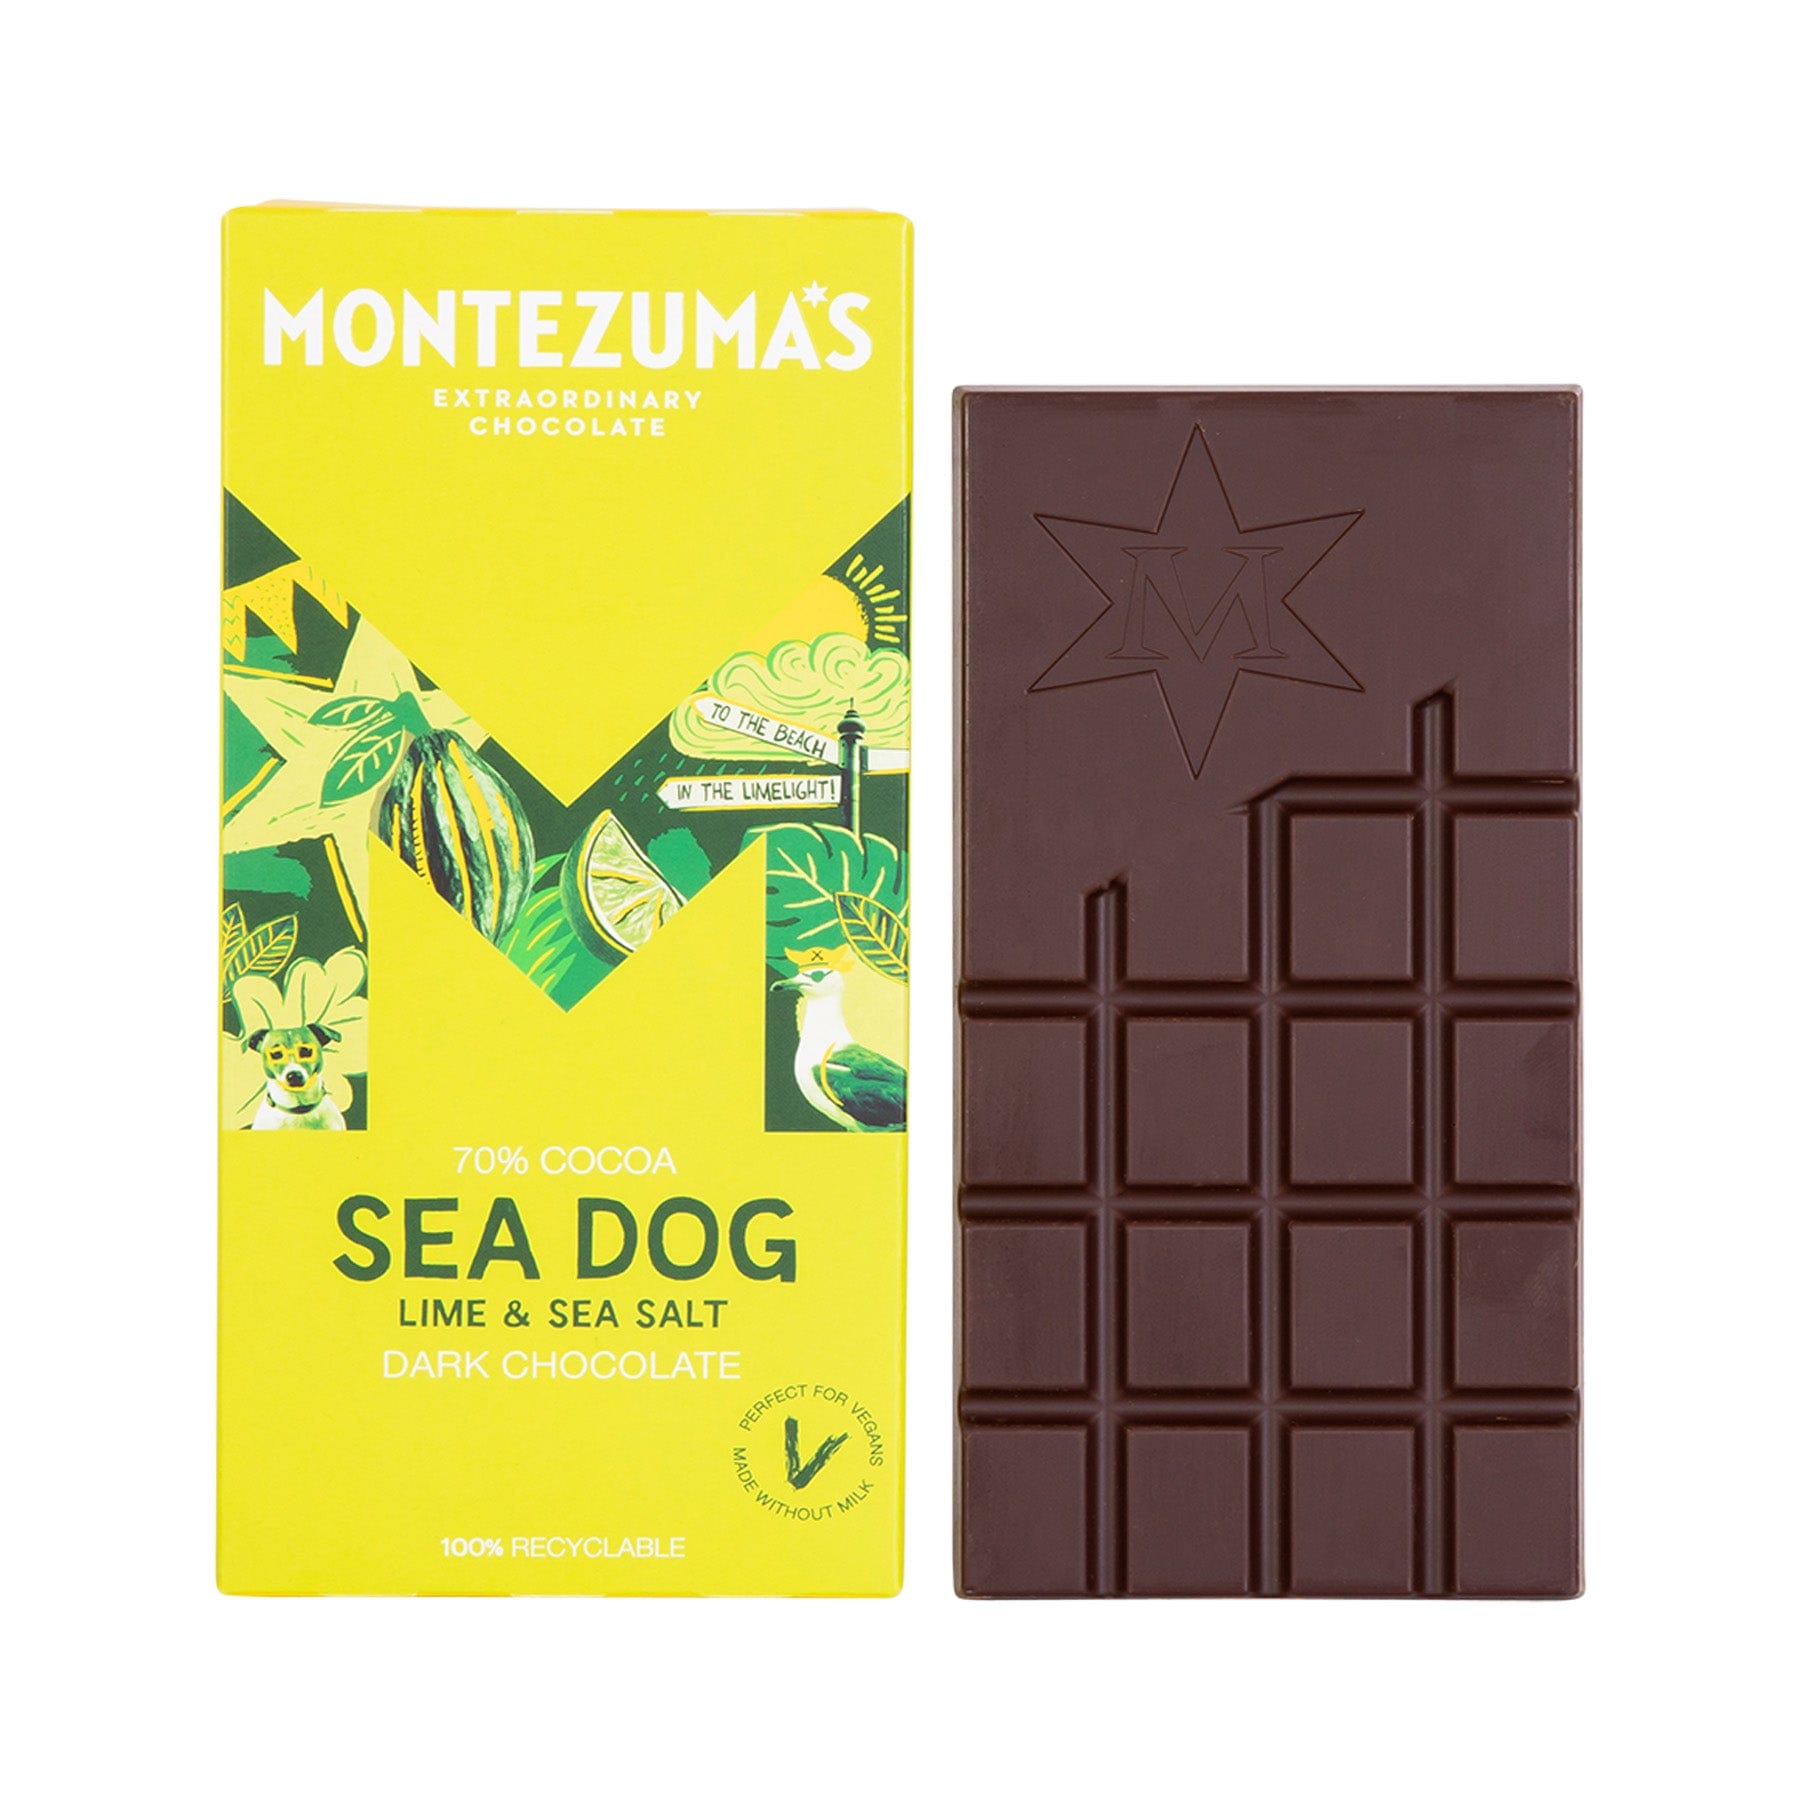 Sea dog dark chocolate bar 90g